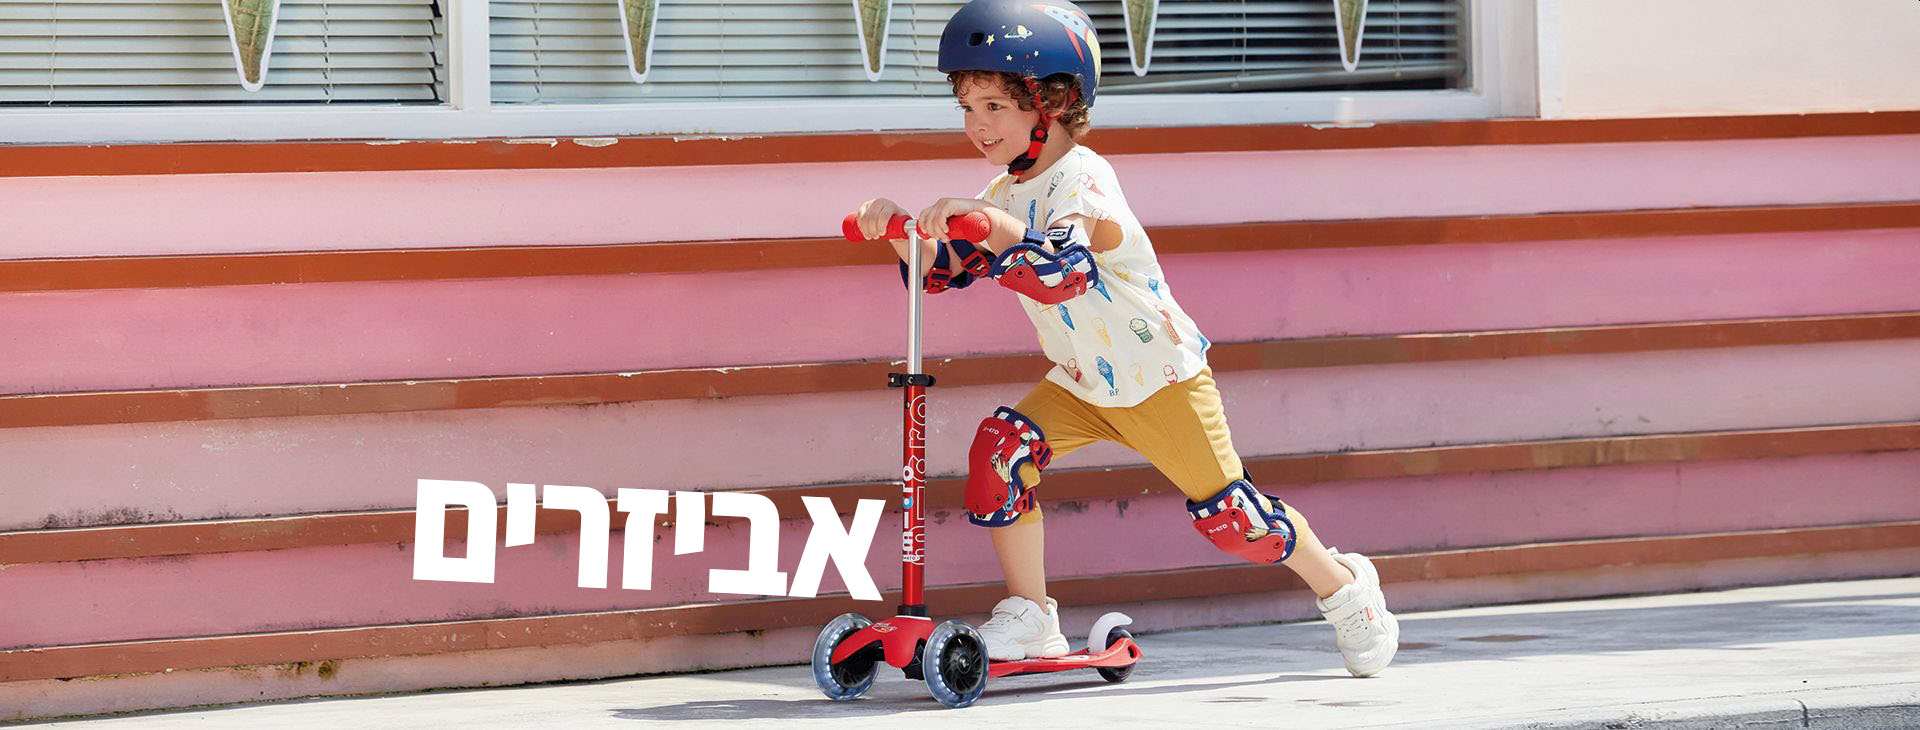 אביזרי בטיחות לרכיבה על קורקינטים ואופניים לילדים - מיקרו ישראל